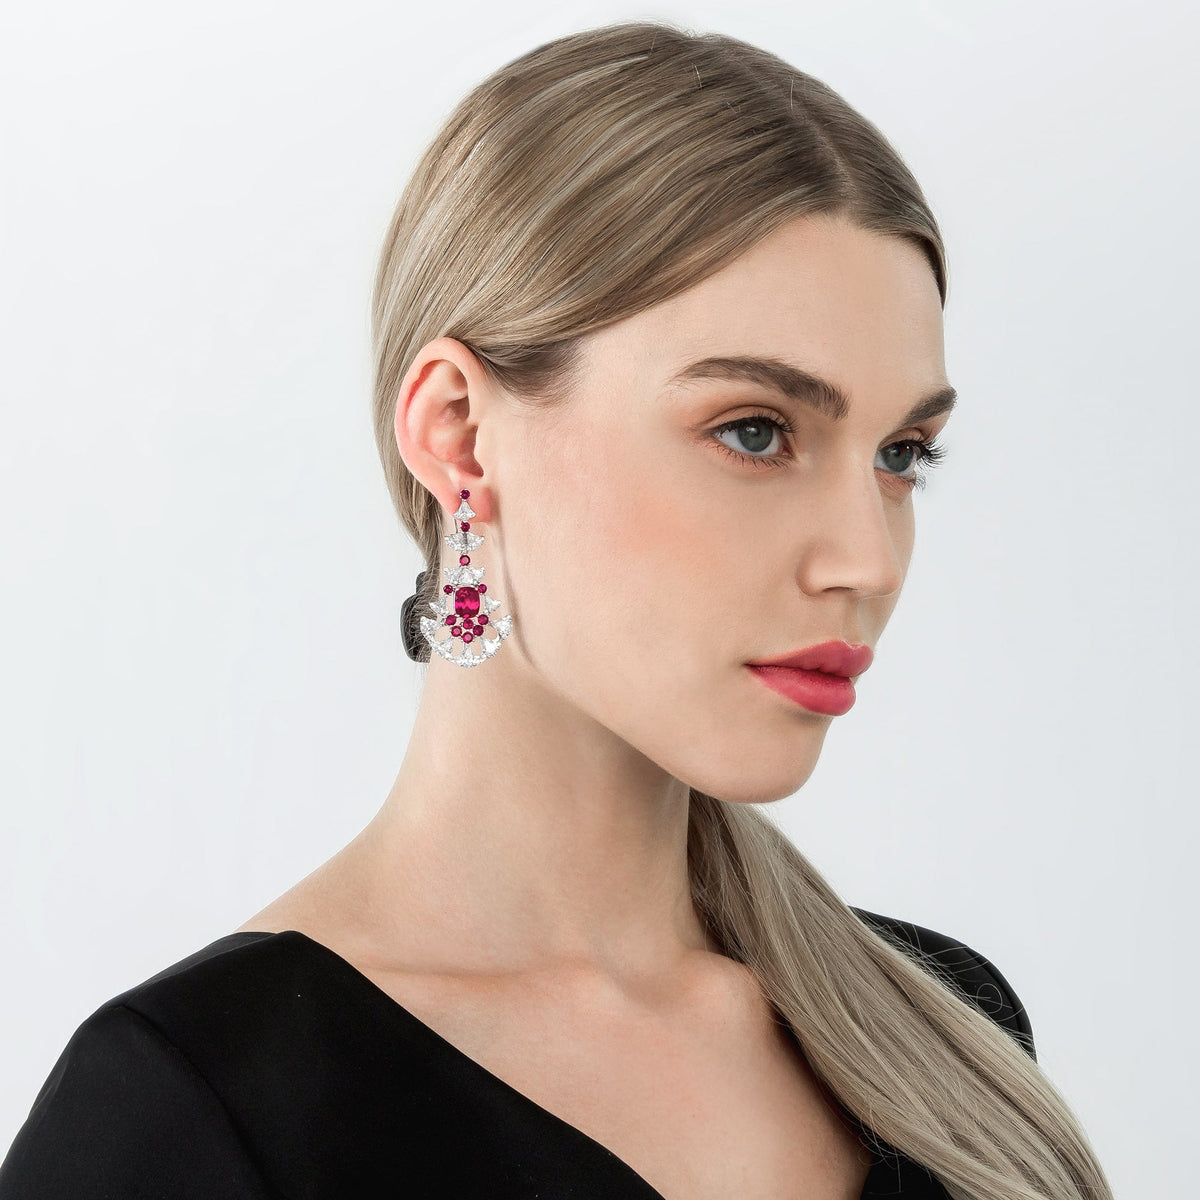 Red & White Fan Chandelier Dangle Earrings - dissoojewelry